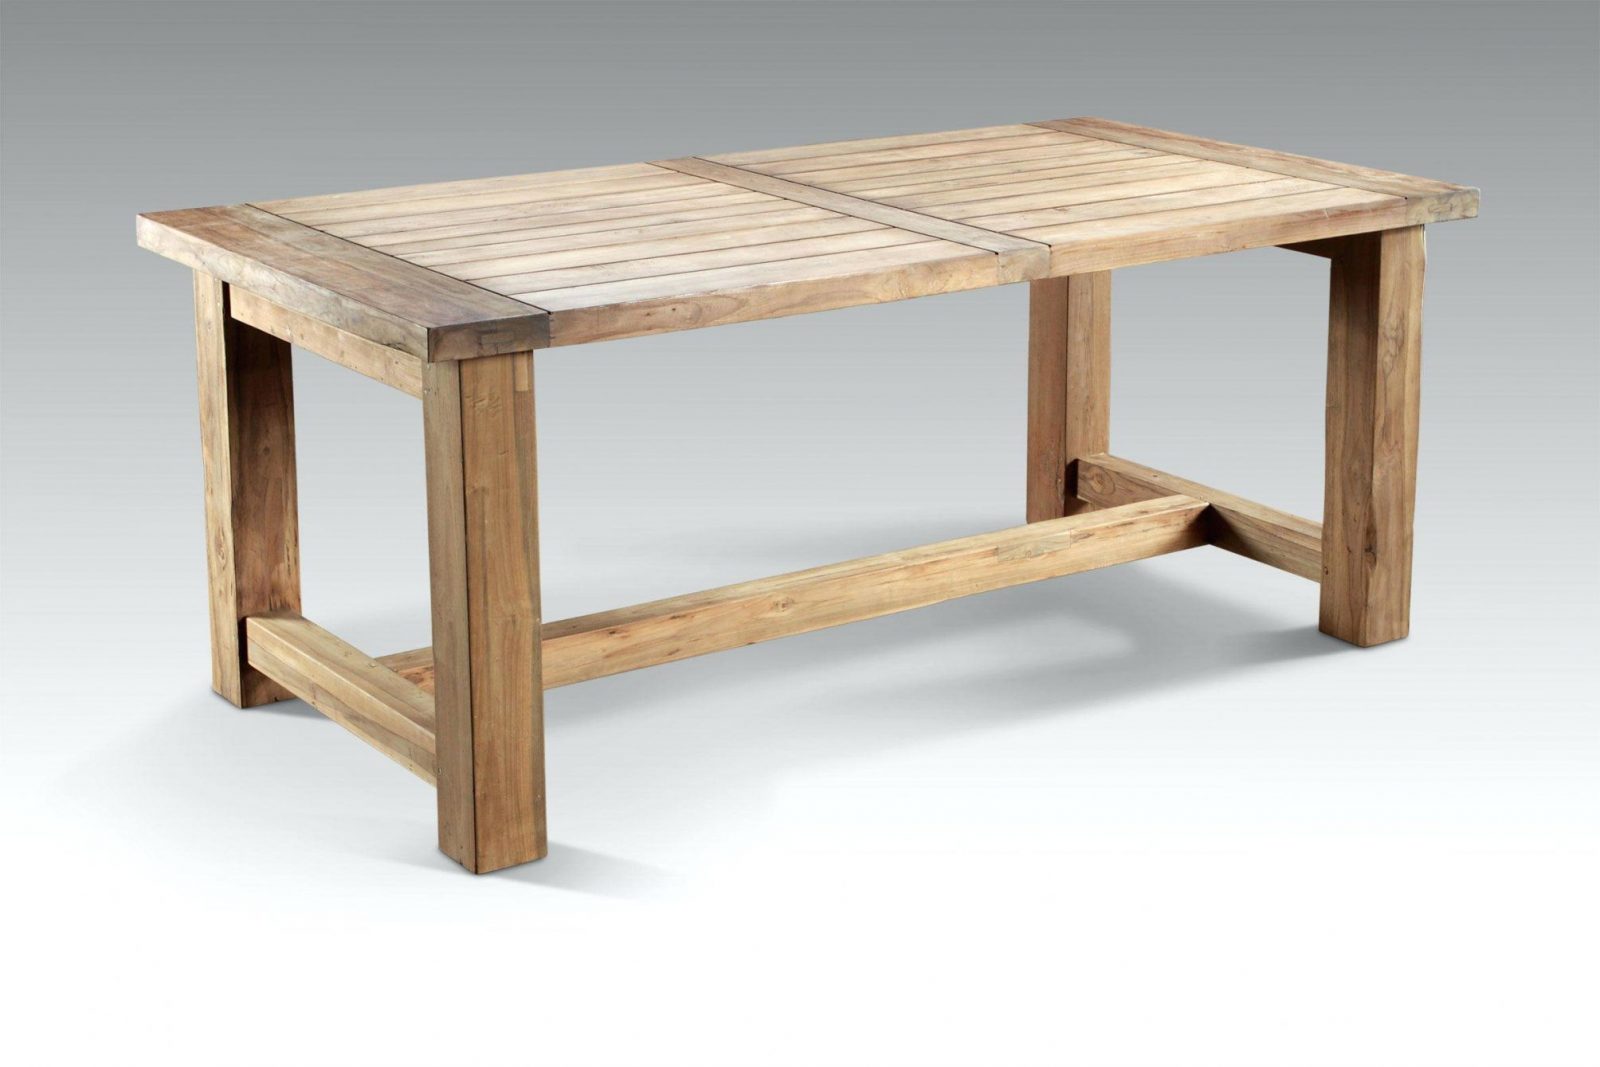 Gartentisch Selbst Bauen Holztisch Selber Nauhuricom Tischplatte von Esstisch Aus Paletten Bauen Photo